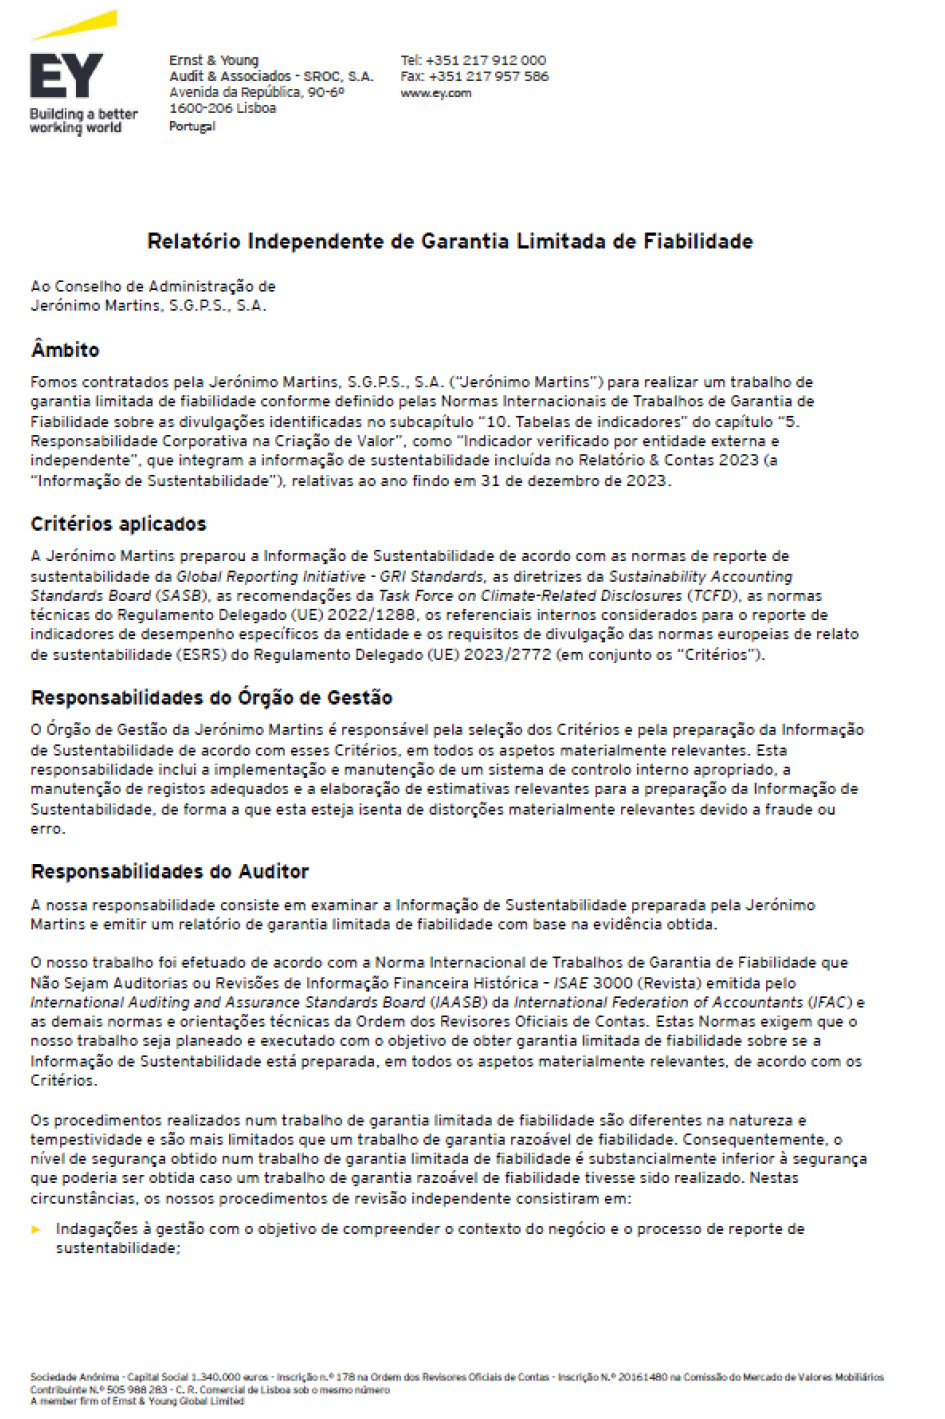 Página 1 do relatório de garantia limitada de fiabilidade independente (foto)